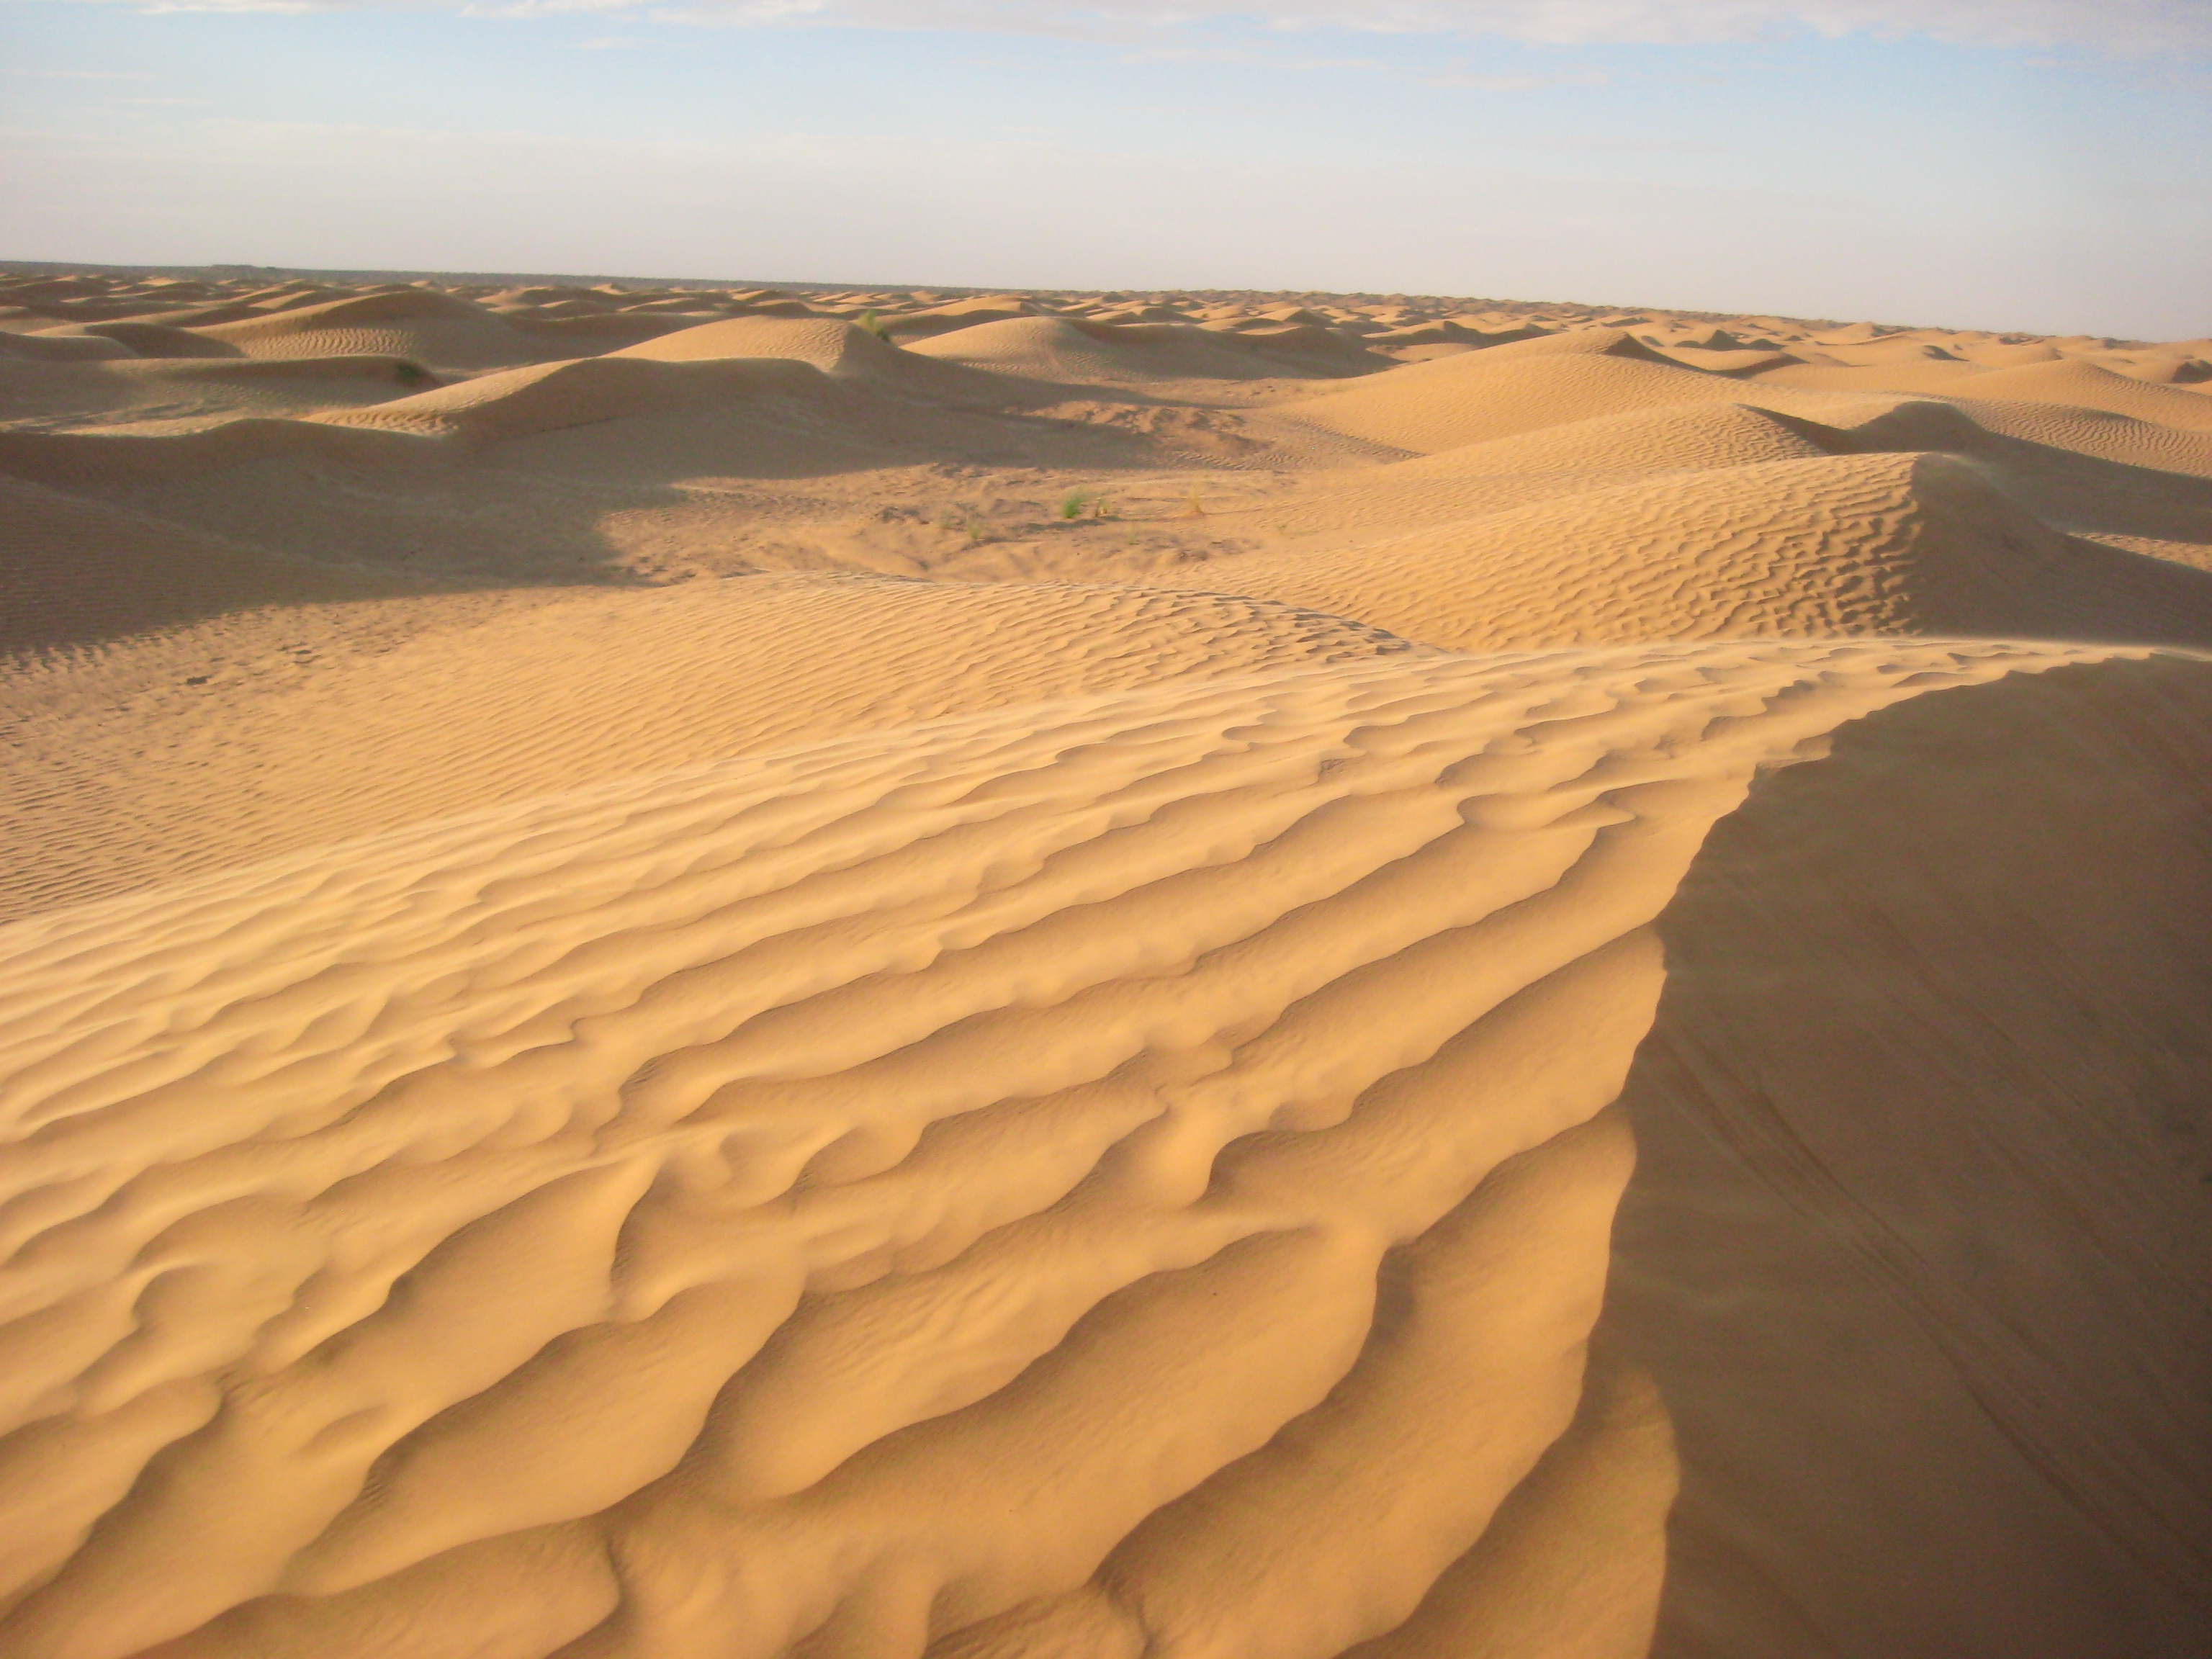 Les dunes de sable du Sahara à perte de vue